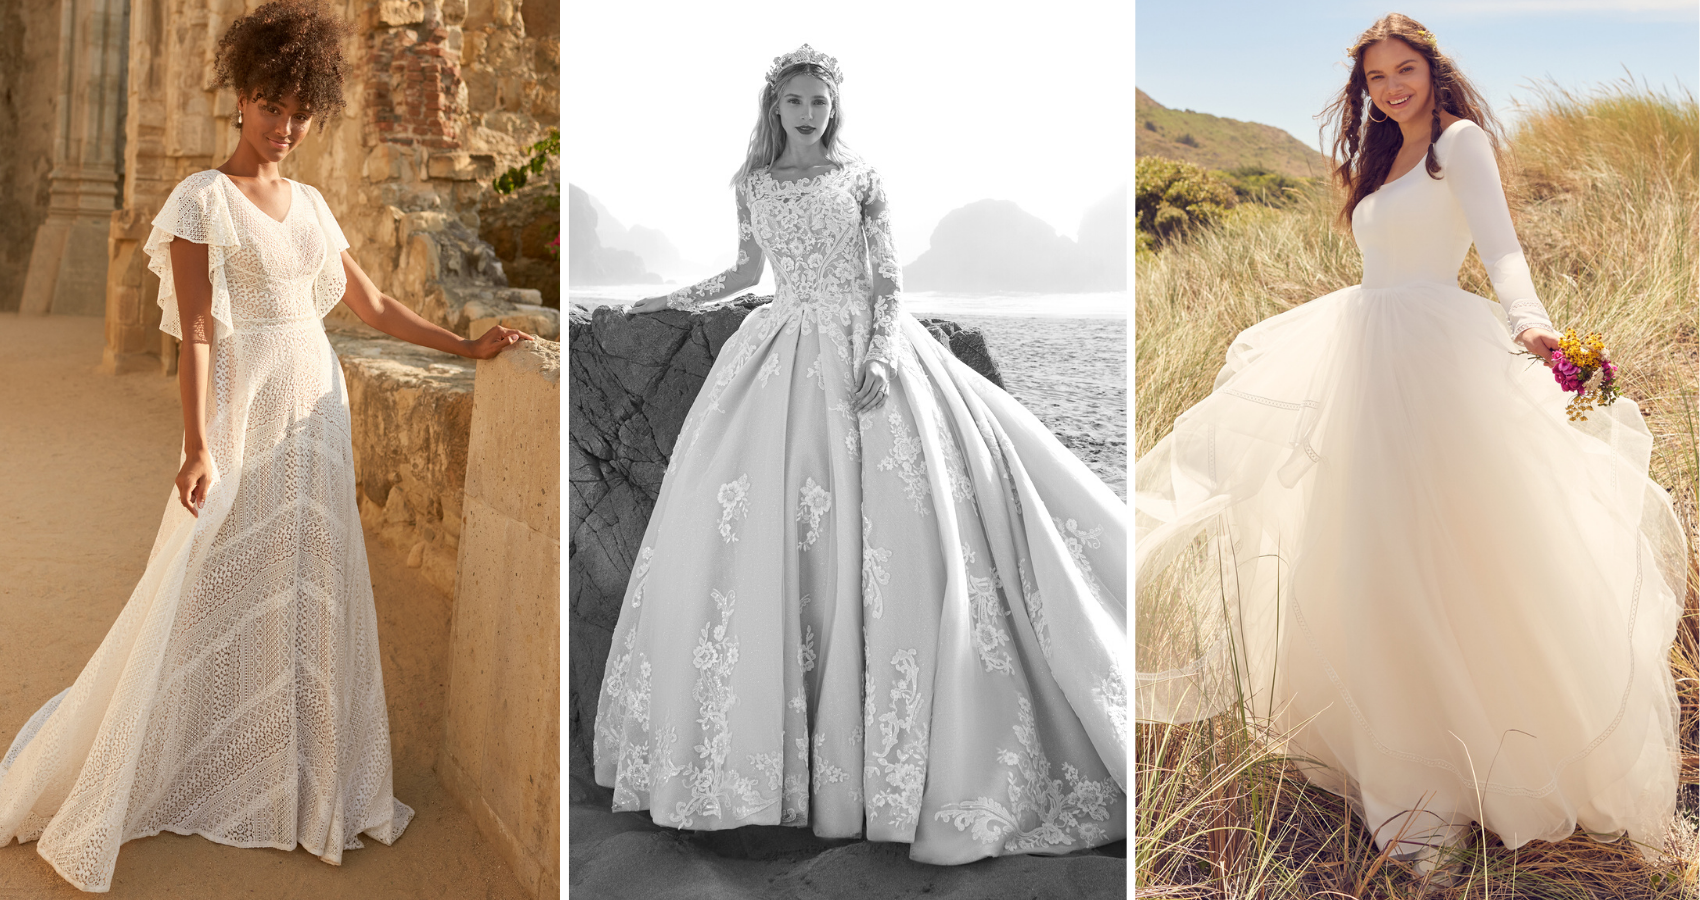 8 Celebrity-Inspired Modest Wedding Dresses